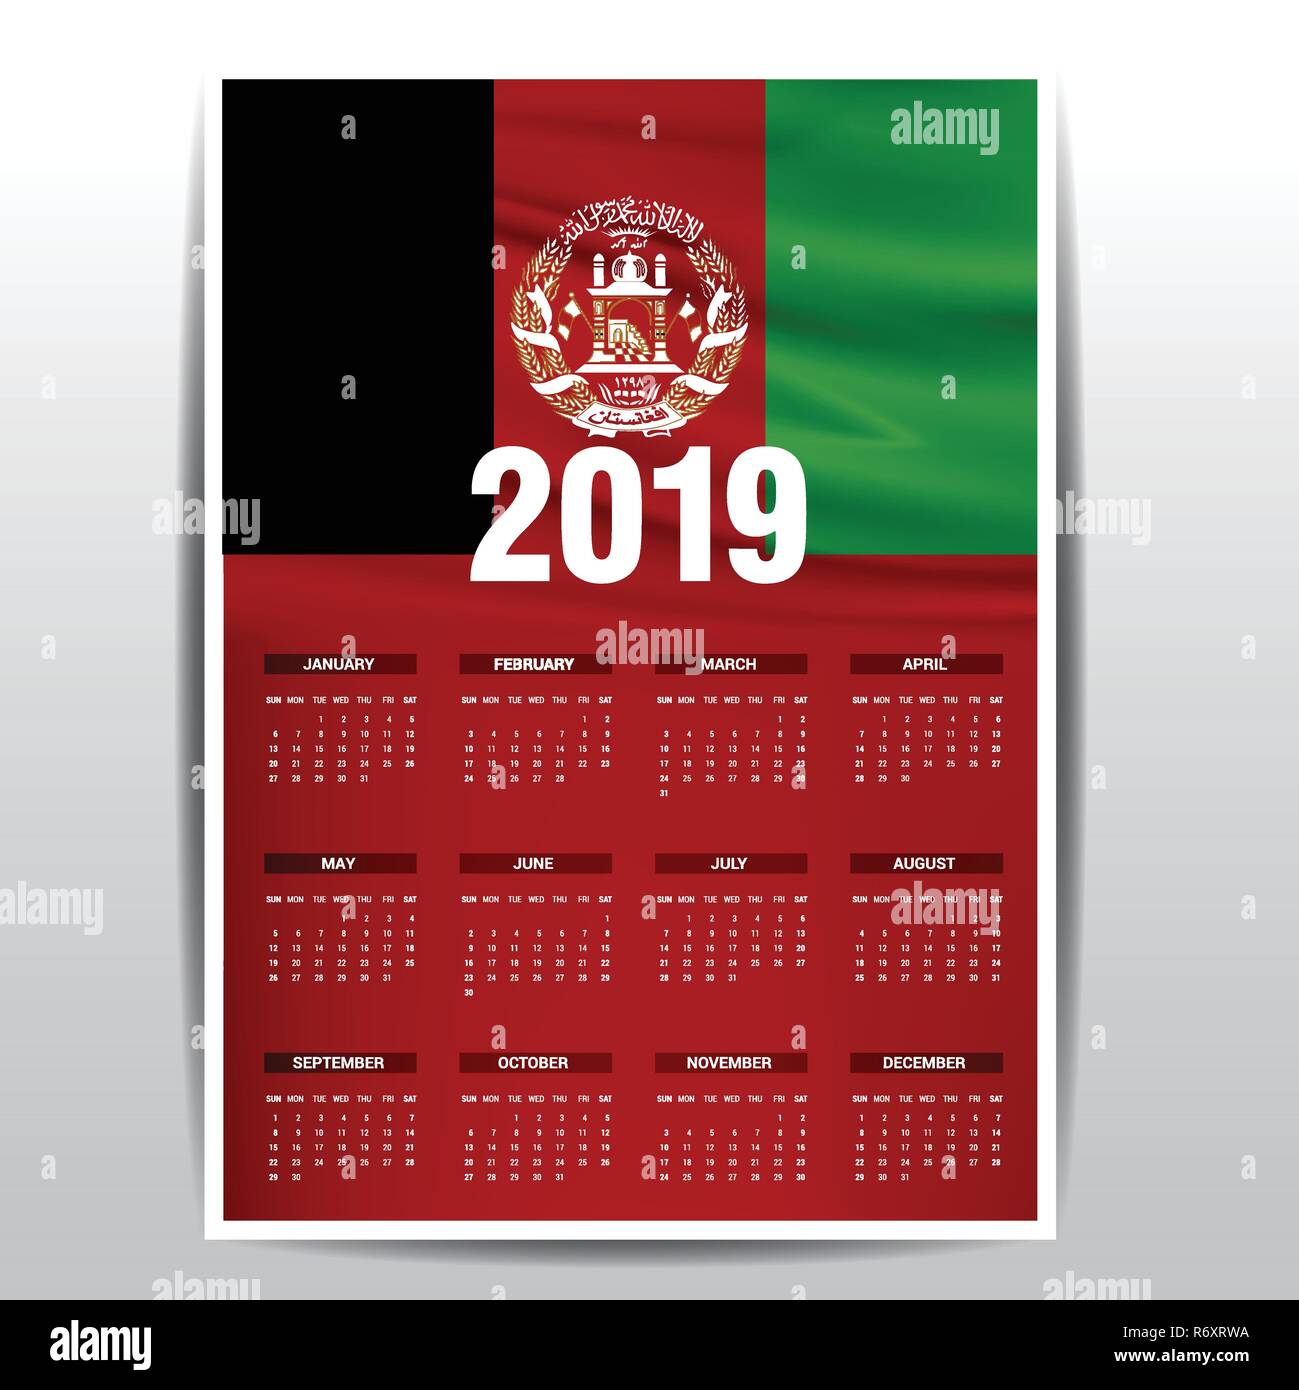 Kalender 2019 Afghanistan Flagge Hintergrund. Englische Sprache  Stock-Vektorgrafik - Alamy